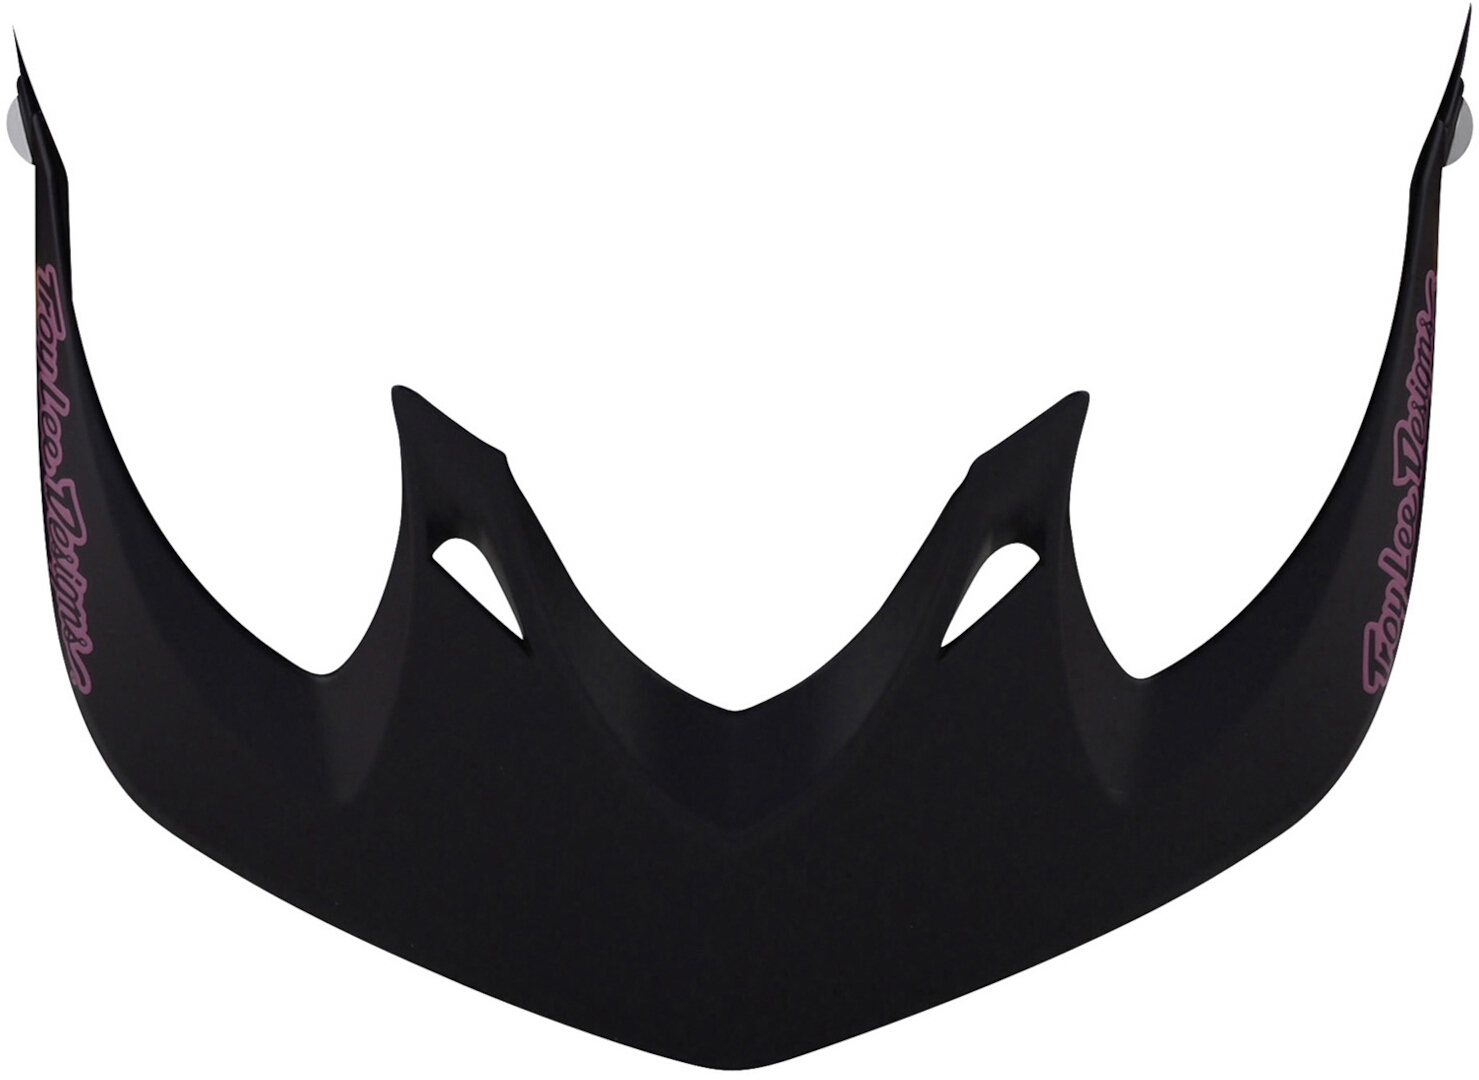 Пик защитный Troy Lee Designs A1 для шлема, черный/пурпурный